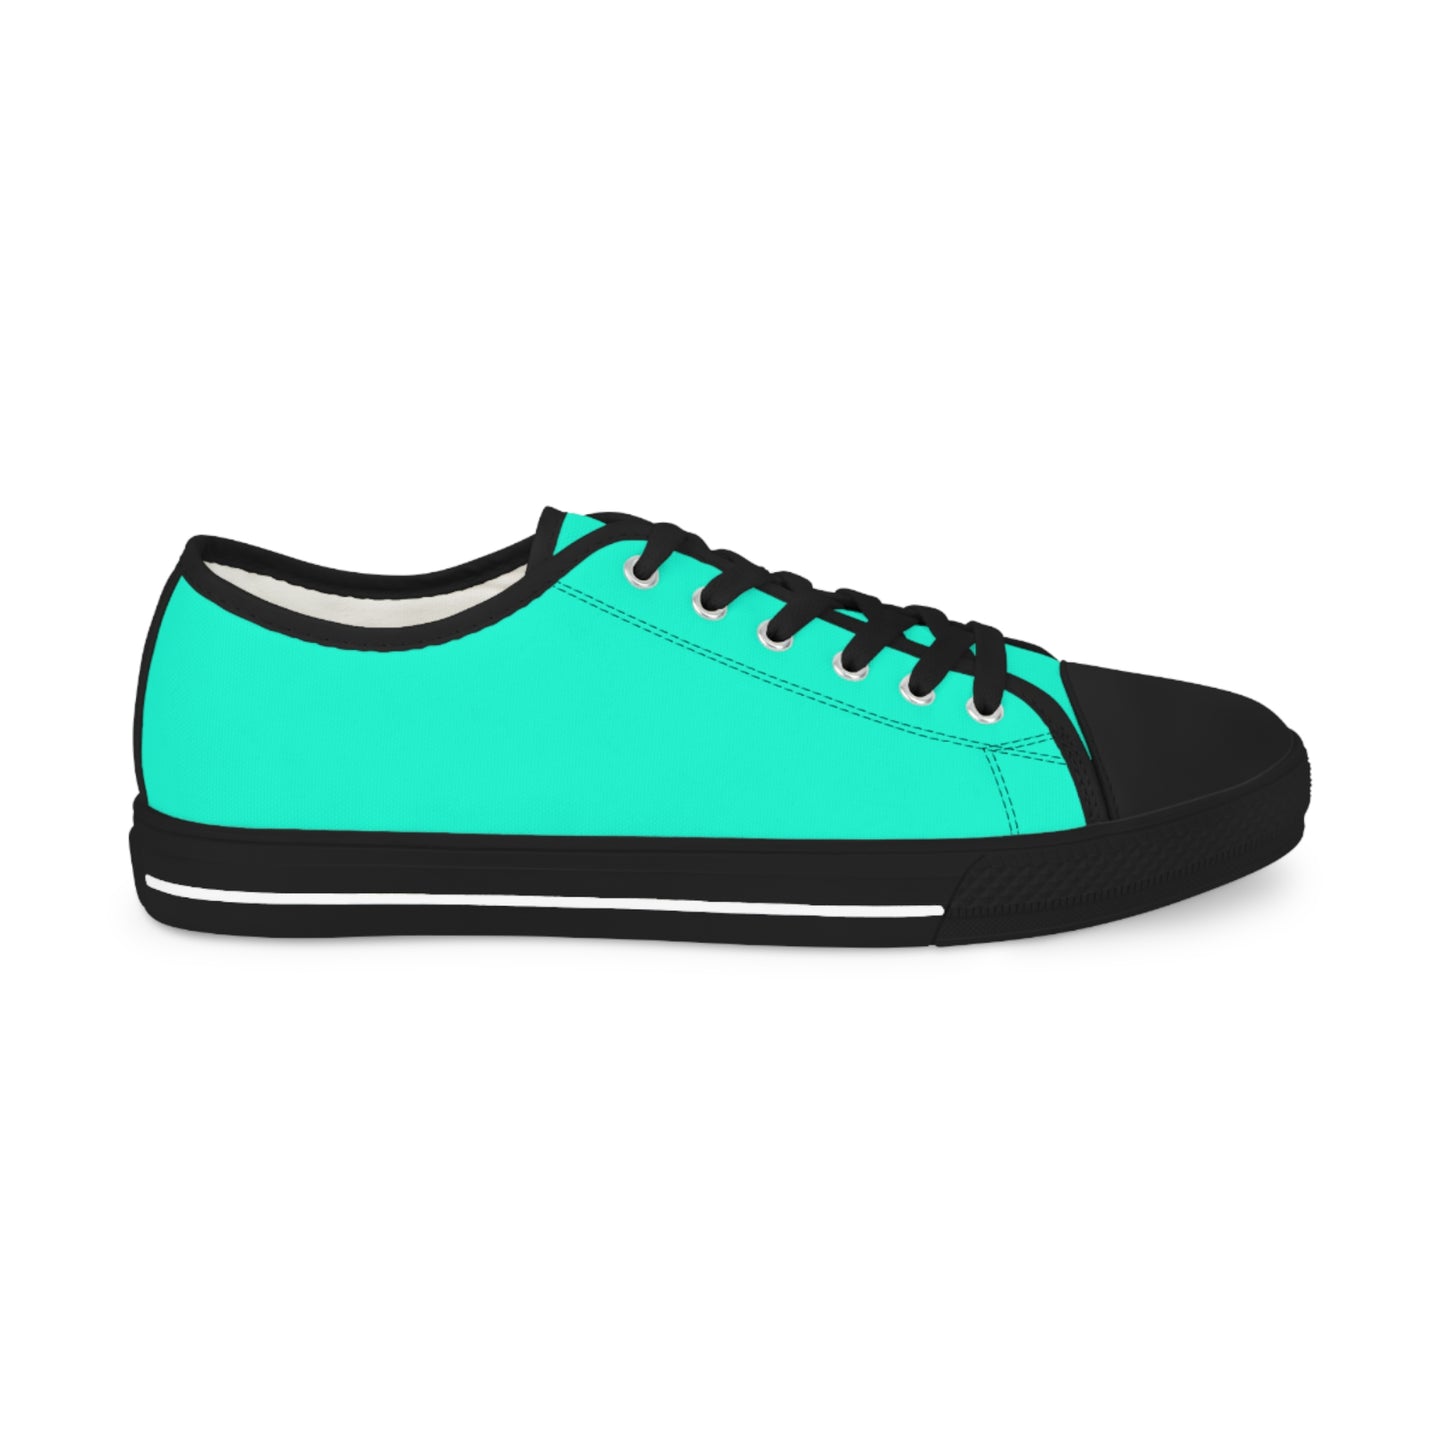 Men's Canvas Low Top Solid Color Sneakers - Cool Pool Aqua Green US 14 Black sole